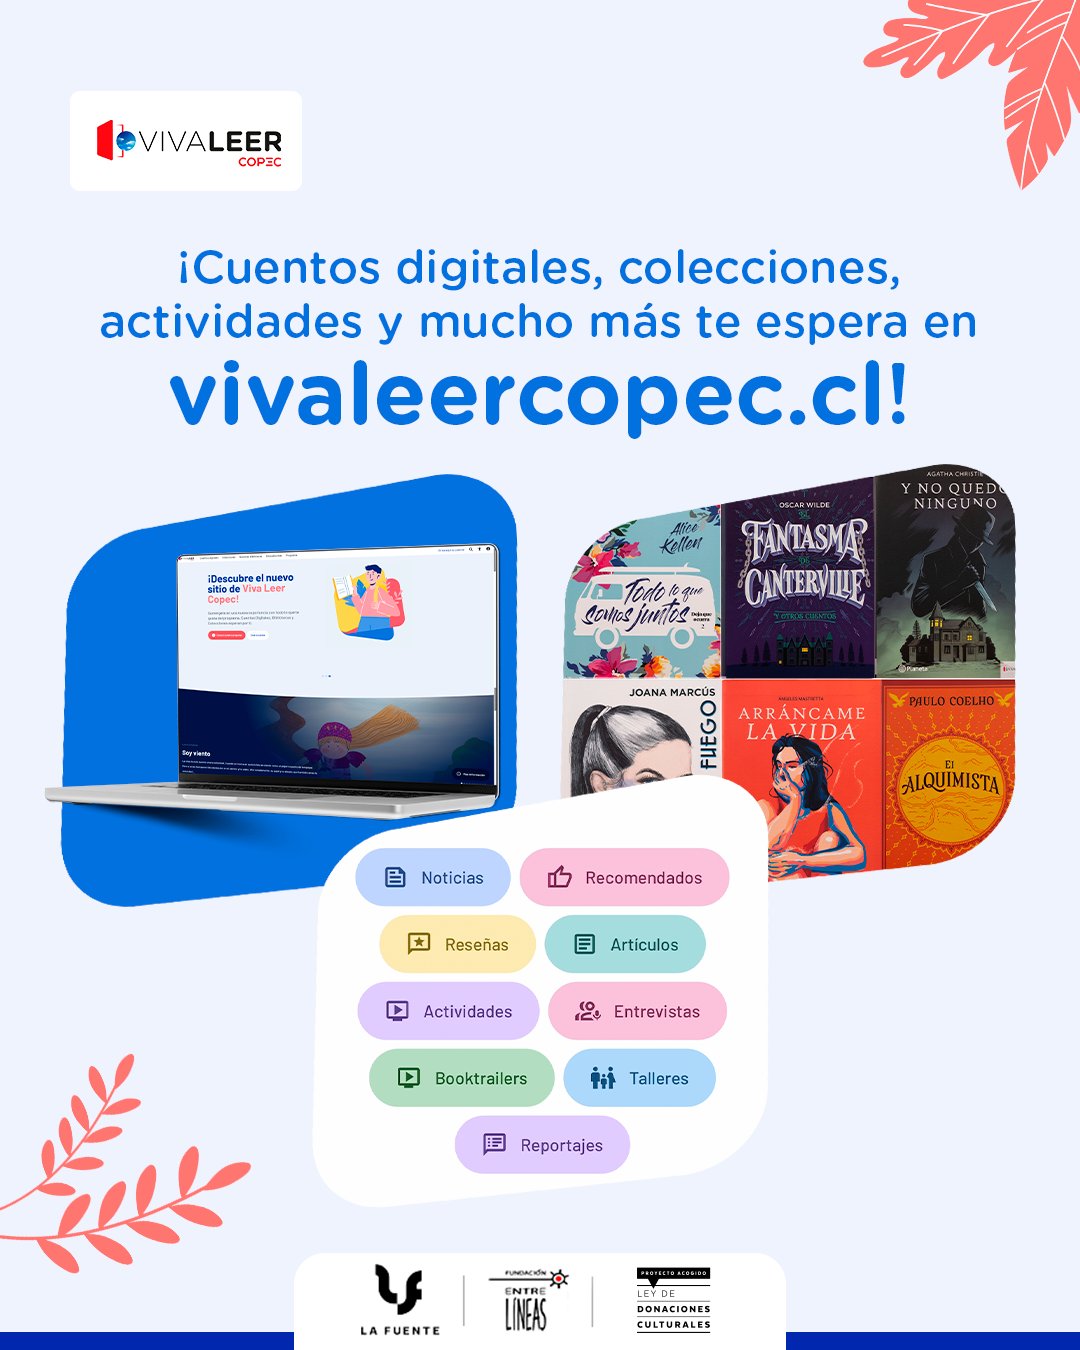 Viva Leer Copec - Cuentos, Bibliotecas, Colecciones